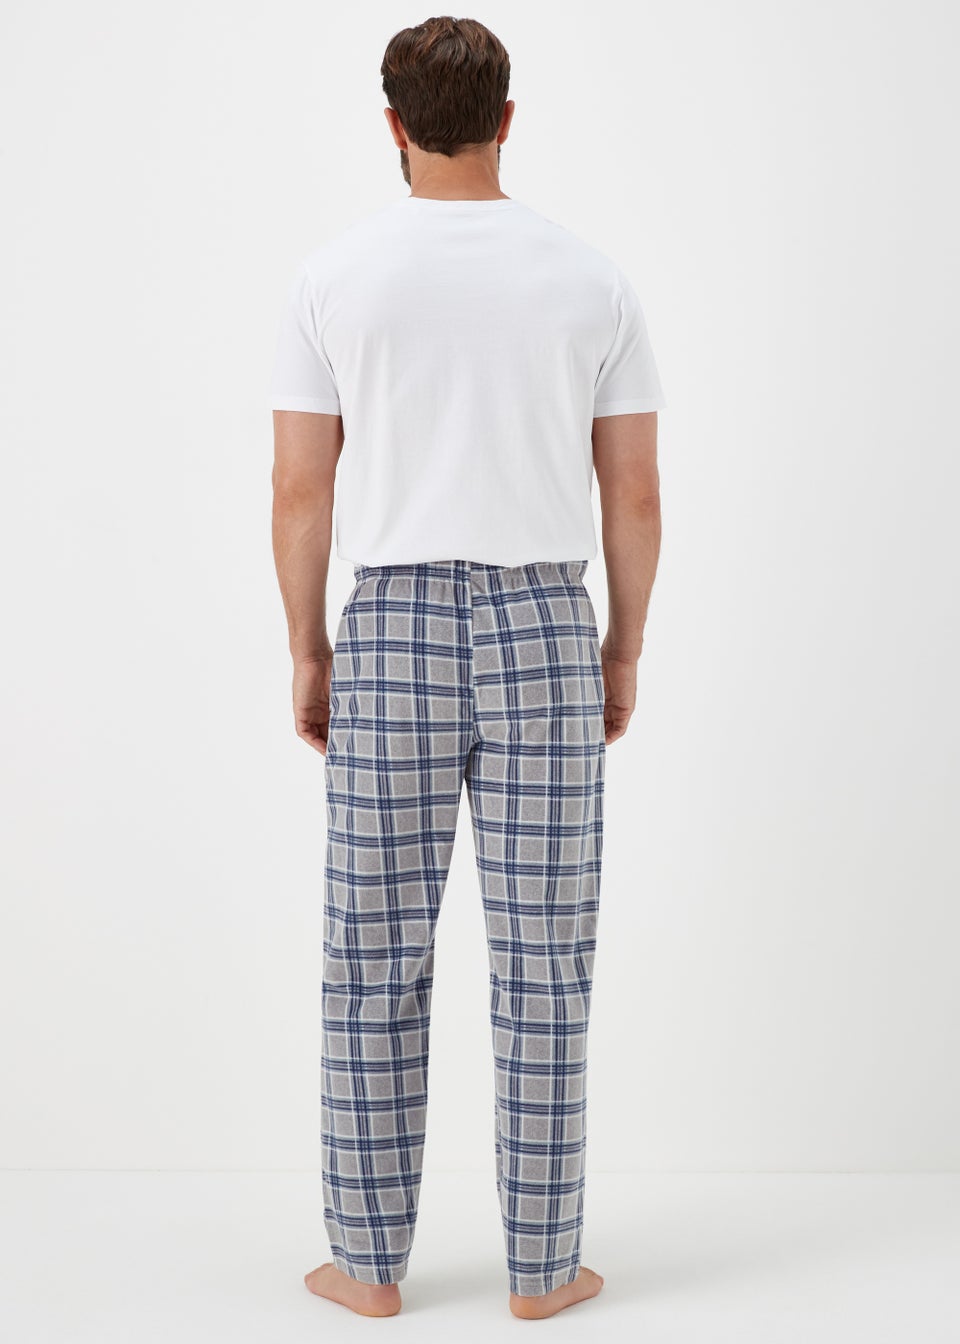 Grey Check Microfleece Pyjama Bottoms